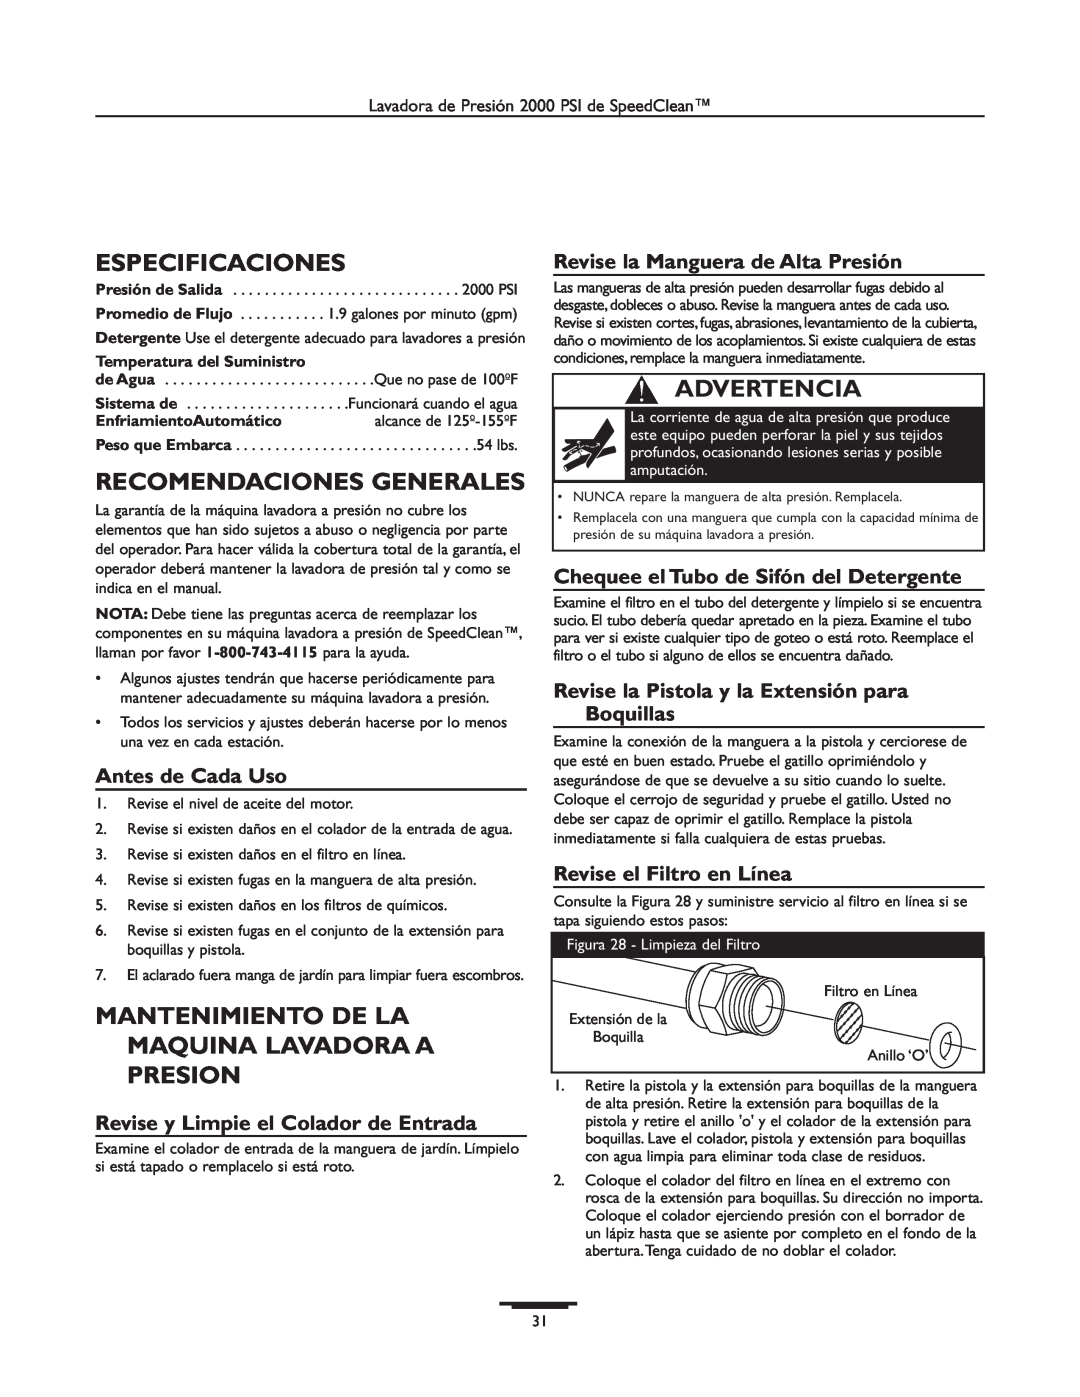 Briggs & Stratton 020238-0 Especificaciones, Recomendaciones Generales, Mantenimiento De La Maquina Lavadora A Presion 